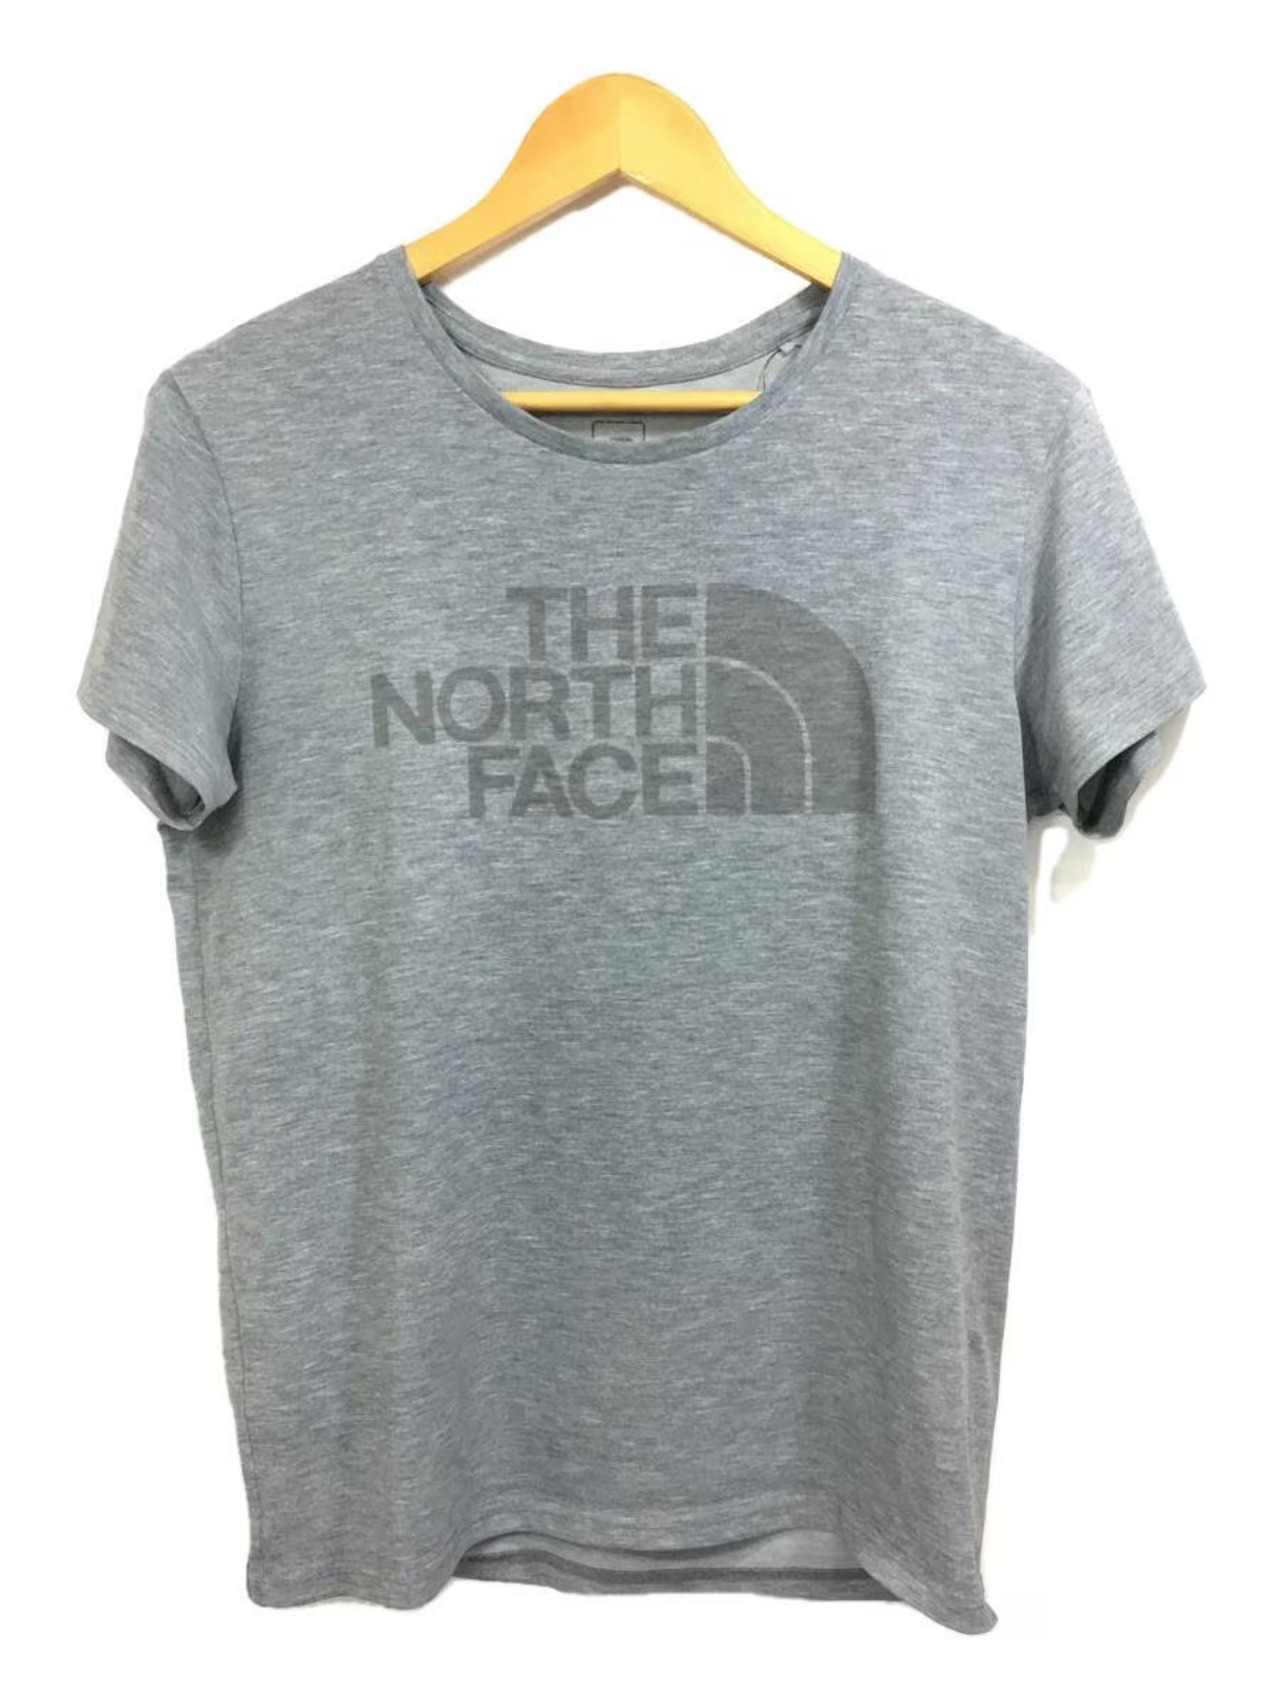 THE NORTH FACE(ザ・ノース・フェイス)プリント半袖カットソー/グレー